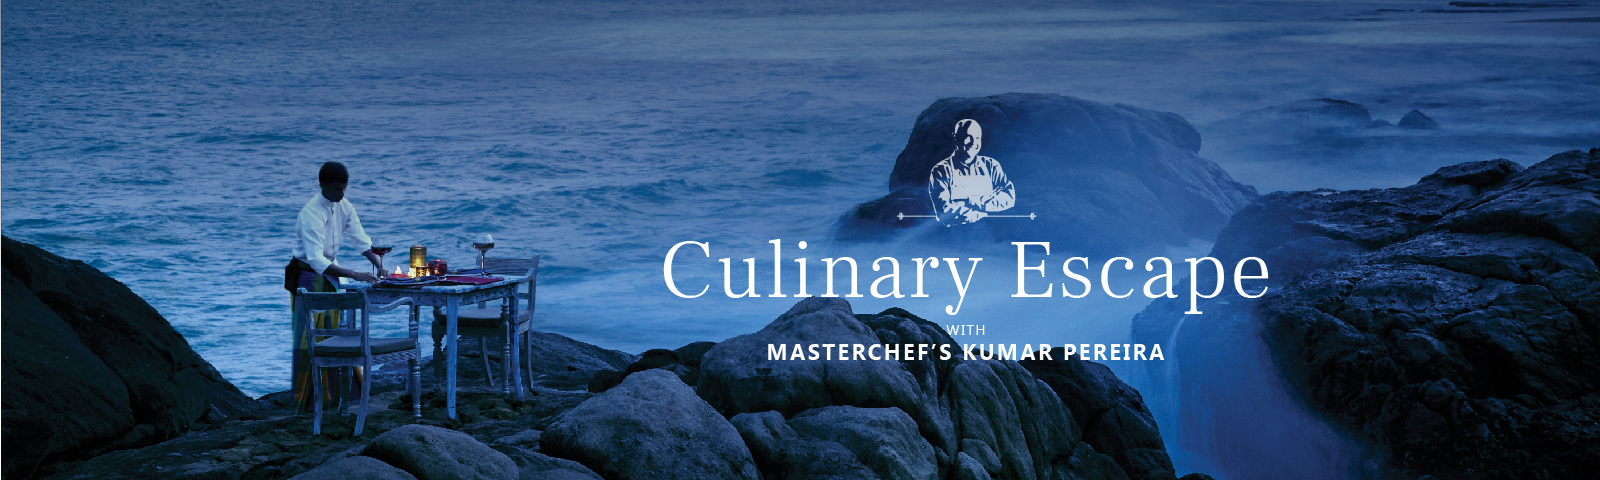 Culinary Escape with Masterchef's Kumar Pereira.